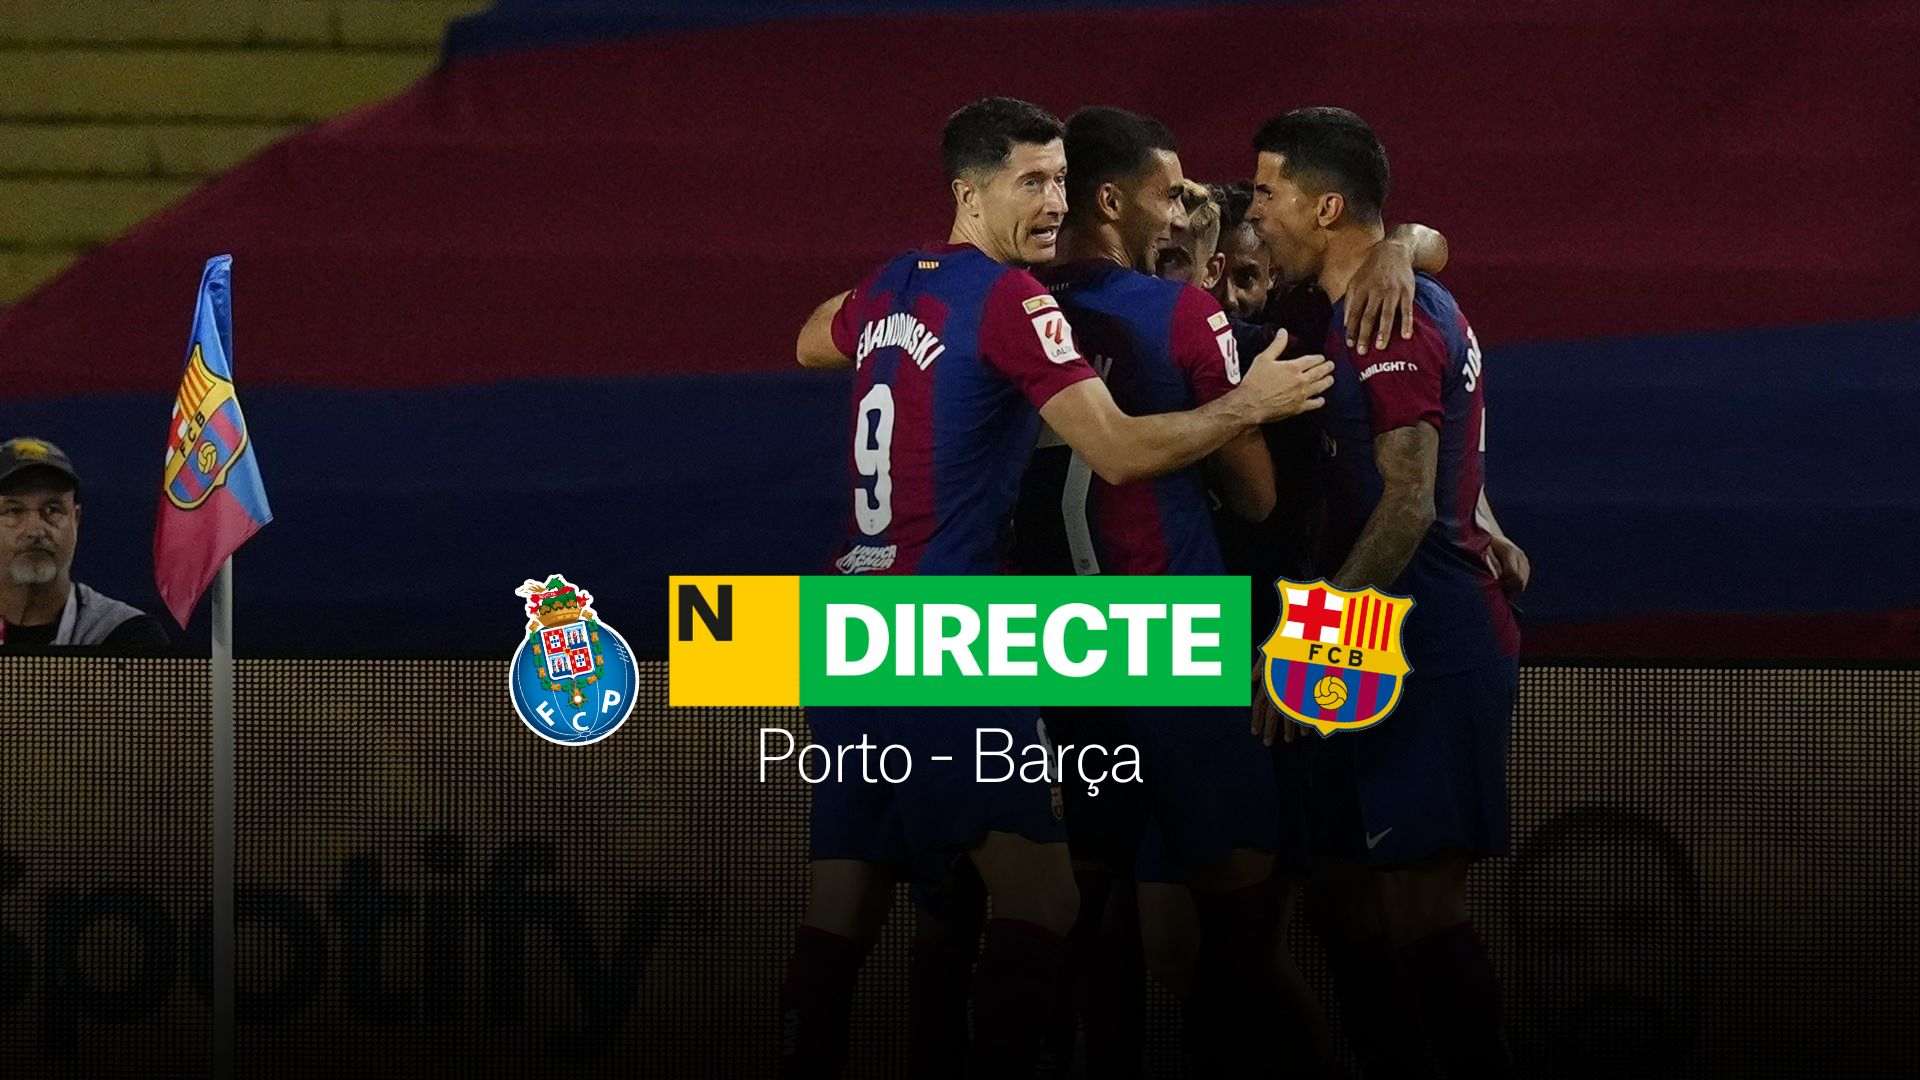 Porto - Barcelona de la Champions League hoy, DIRECTO | Resultado, resumen y goles